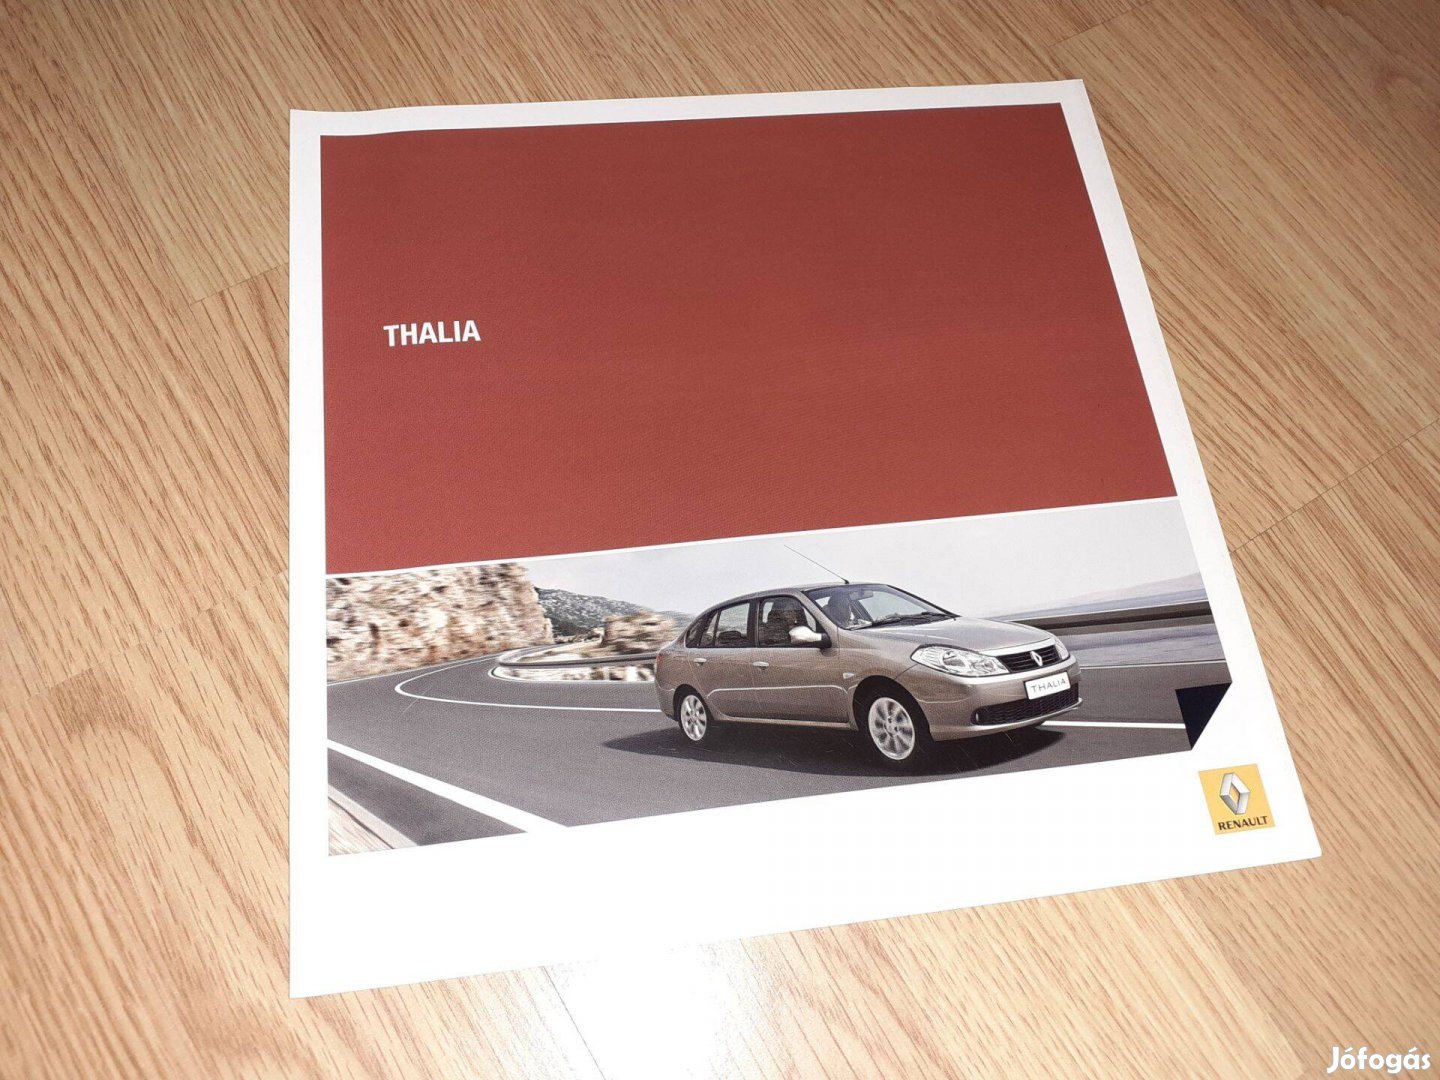 Renault Thalia prospektus - 2008, magyar nyelvű